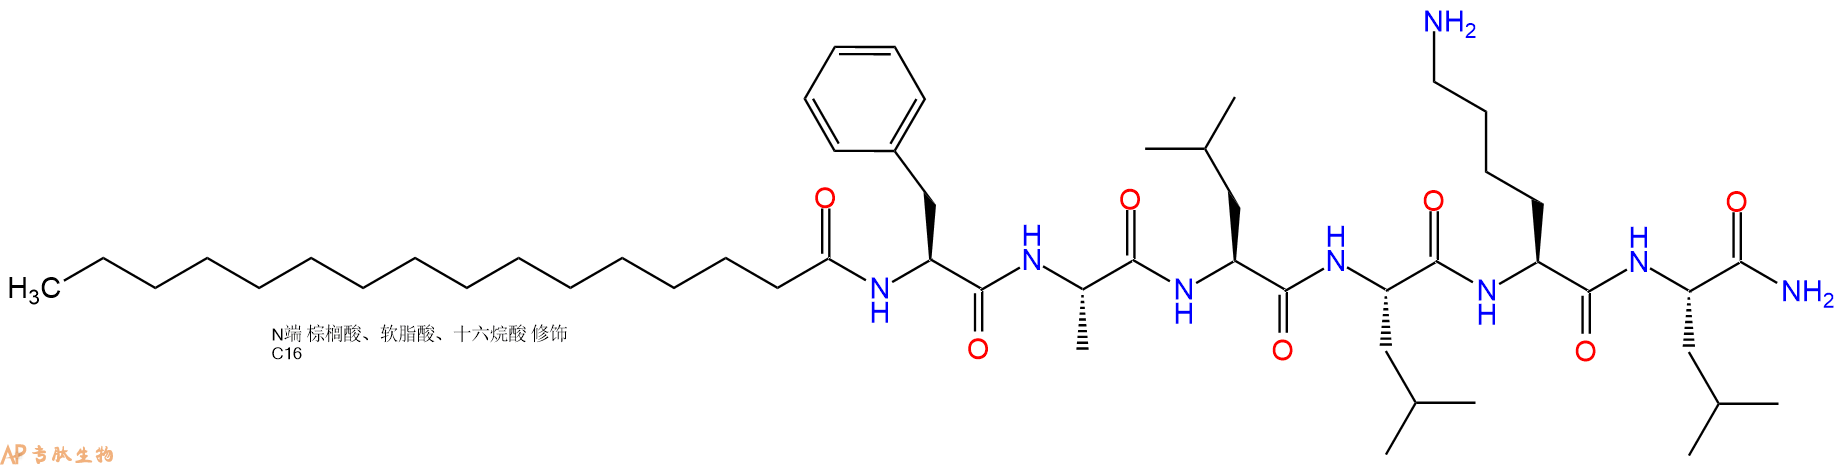 多肽生物产品棕榈酰六肽-14891498-01-4